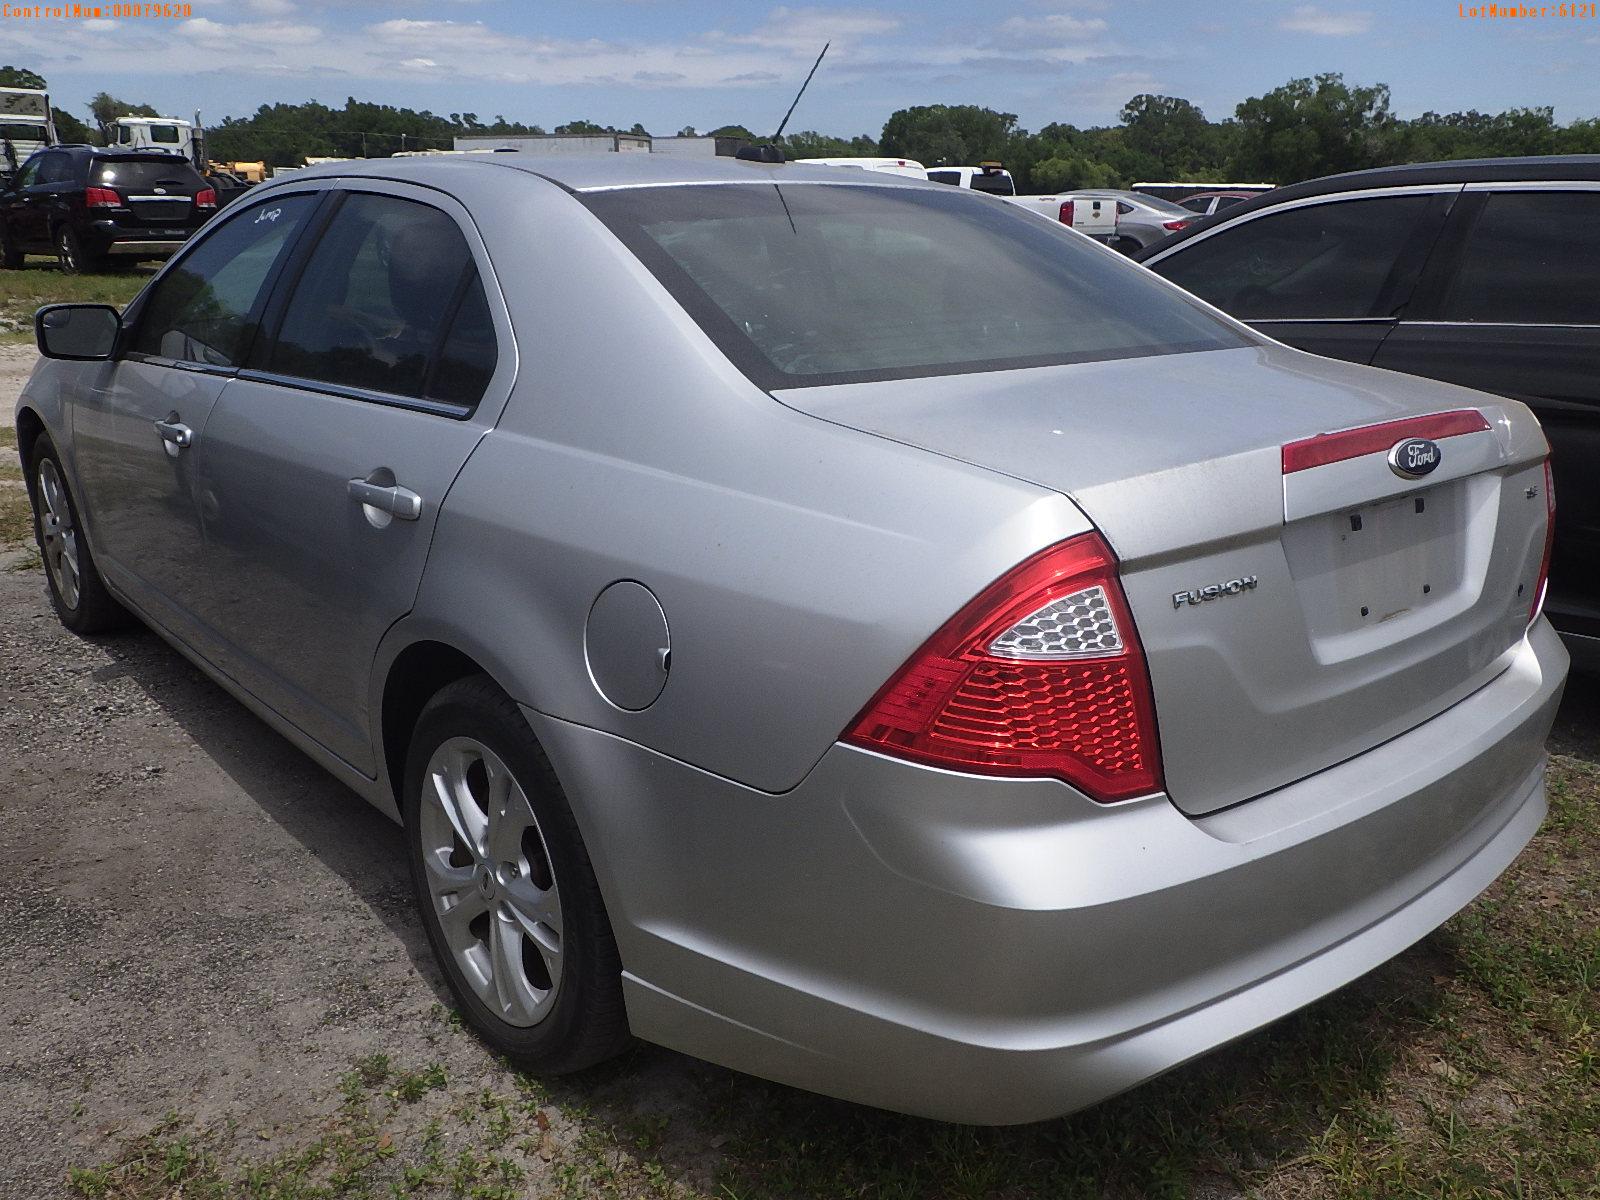 5-06121 (Cars-Sedan 4D)  Seller: Florida State F.D.L.E. 2012 FORD FUSION